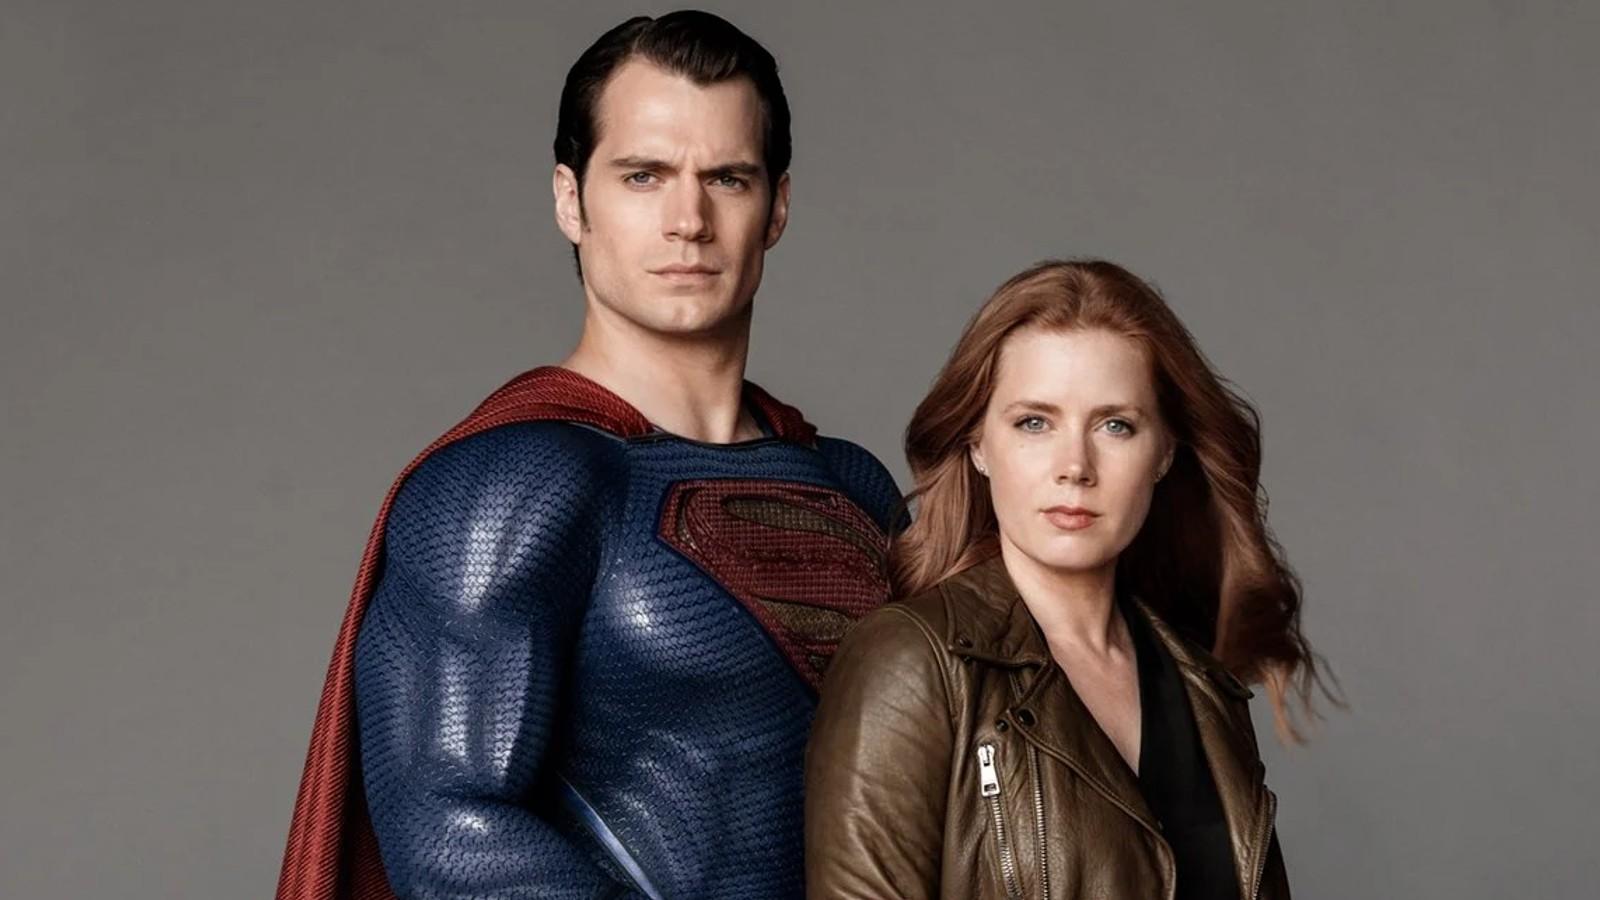 Amy Adams cast as Lois Lane in Zack Snyder's SUPERMAN: MAN OF STEEL